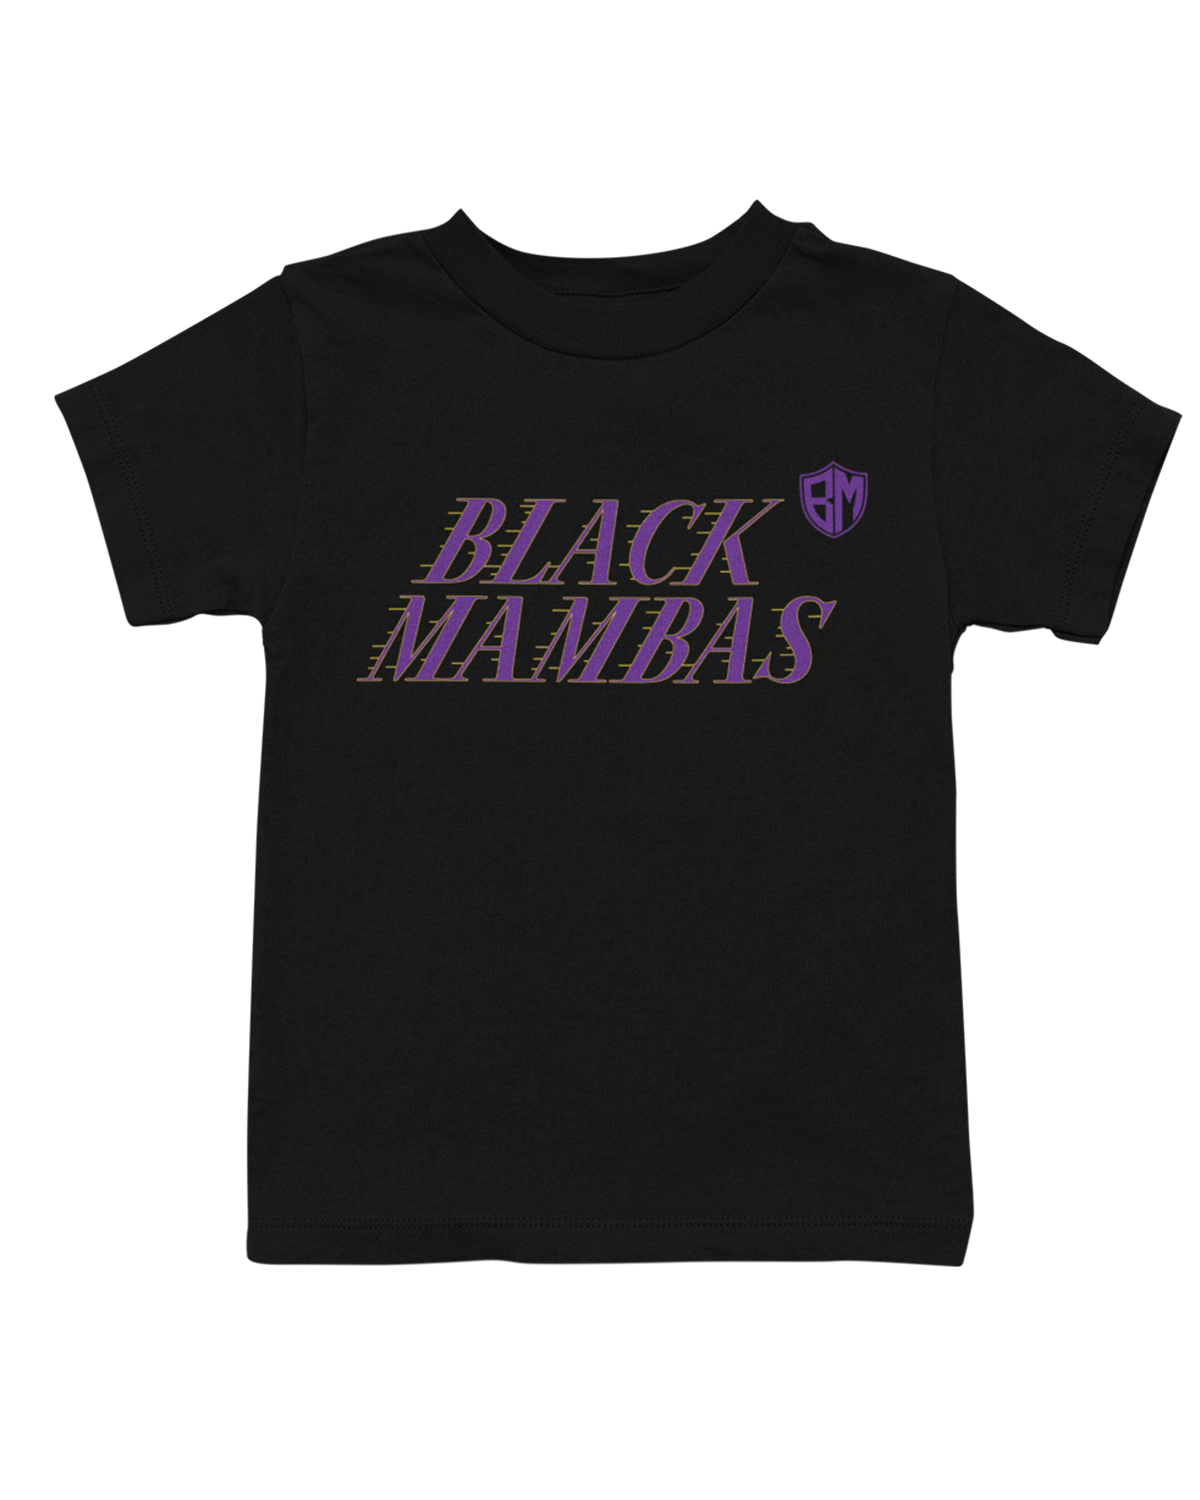 Black Mambas Kids Shirts